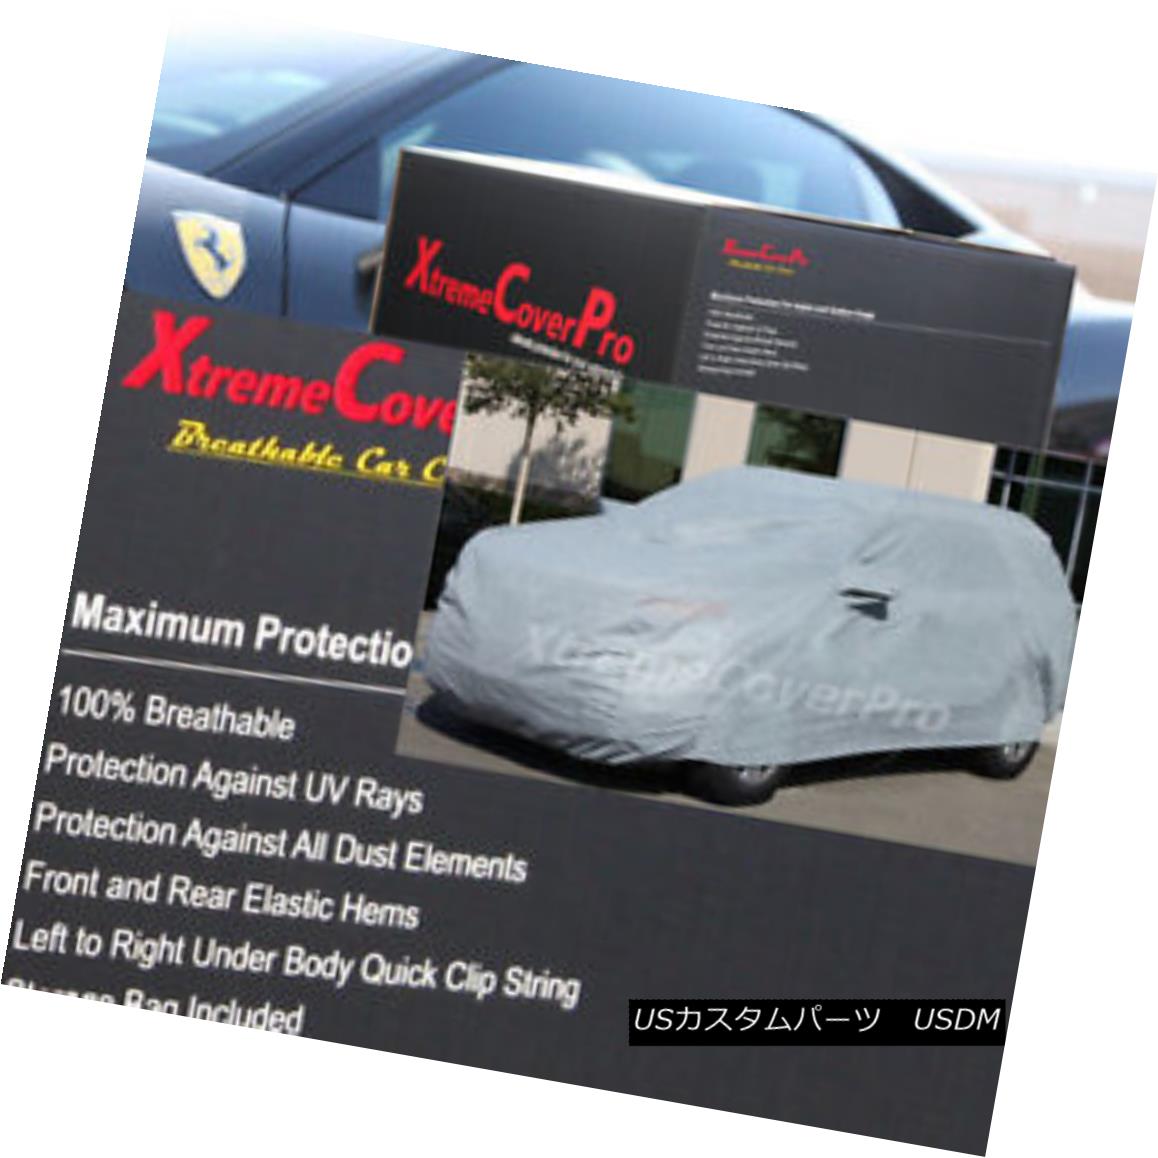 2015 CADILLAC ESCLADE NON-ESV Breathable Car Cover w/Mirror Pockets - Grayカテゴリカーカバー状態新品メーカー車種発送詳細送料一律 1000円（※北海道、沖縄、離島は省く）商品詳細輸入商品の為、英語表記となります。 Condition: New Type: Full Coverage Cover Length (ft.): 201-211 inches Fit: Universal Fit Warranty: Limited Lifetime through Manufacturer Material: 70g per meter^2 non-woven fabric Mirror Pockets: Yes Features: Elastic Hem, Non-Abrasive Lining, Mirror Pockets Manufacturer Part Number: DOES NOT APPLY Brand: XtremeCoverPro FITMENT: PLEASE REFER TO AUCTION TITLE MATCHES YOUR VEHICLE Primary Color: Gray Color: Gray※以下の注意事項をご理解頂いた上で、ご入札下さい※■海外輸入品の為、NC,NRでお願い致します。■フィッテングや車検対応の有無については、画像と説明文よりお客様の方にてご判断をお願いしております。■USのカスタムパーツは国内の純正パーツを取り外した後、接続コネクタが必ずしも一致するとは限らず、加工が必要な場合がございます。■商品説明文中に英語にて”保障”に関する記載があっても適応はされませんので、ご理解ください。■初期不良（到着より7日以内）のみ保証対象とします。ただし、取り付け後は、保証対象外とします。■海外倉庫から到着した製品を、再度国内で検品を行い、日本郵便または佐川急便にて発送となります。■お届けまでには、2〜3週間程頂いております。ただし、天候次第で多少遅れが発生する場合もあります。■商品落札後のお客様のご都合によるキャンセルはお断りしておりますが、商品落札金額の30％の手数料をいただいた場合のみお受けいたします。■他にもUSパーツを多数出品させて頂いておりますので、ご覧頂けたらと思います。■USパーツの輸入代行も行っておりますので、ショップに掲載されていない商品でもお探しする事が可能です!!お気軽にお問い合わせ下さい。&nbsp;